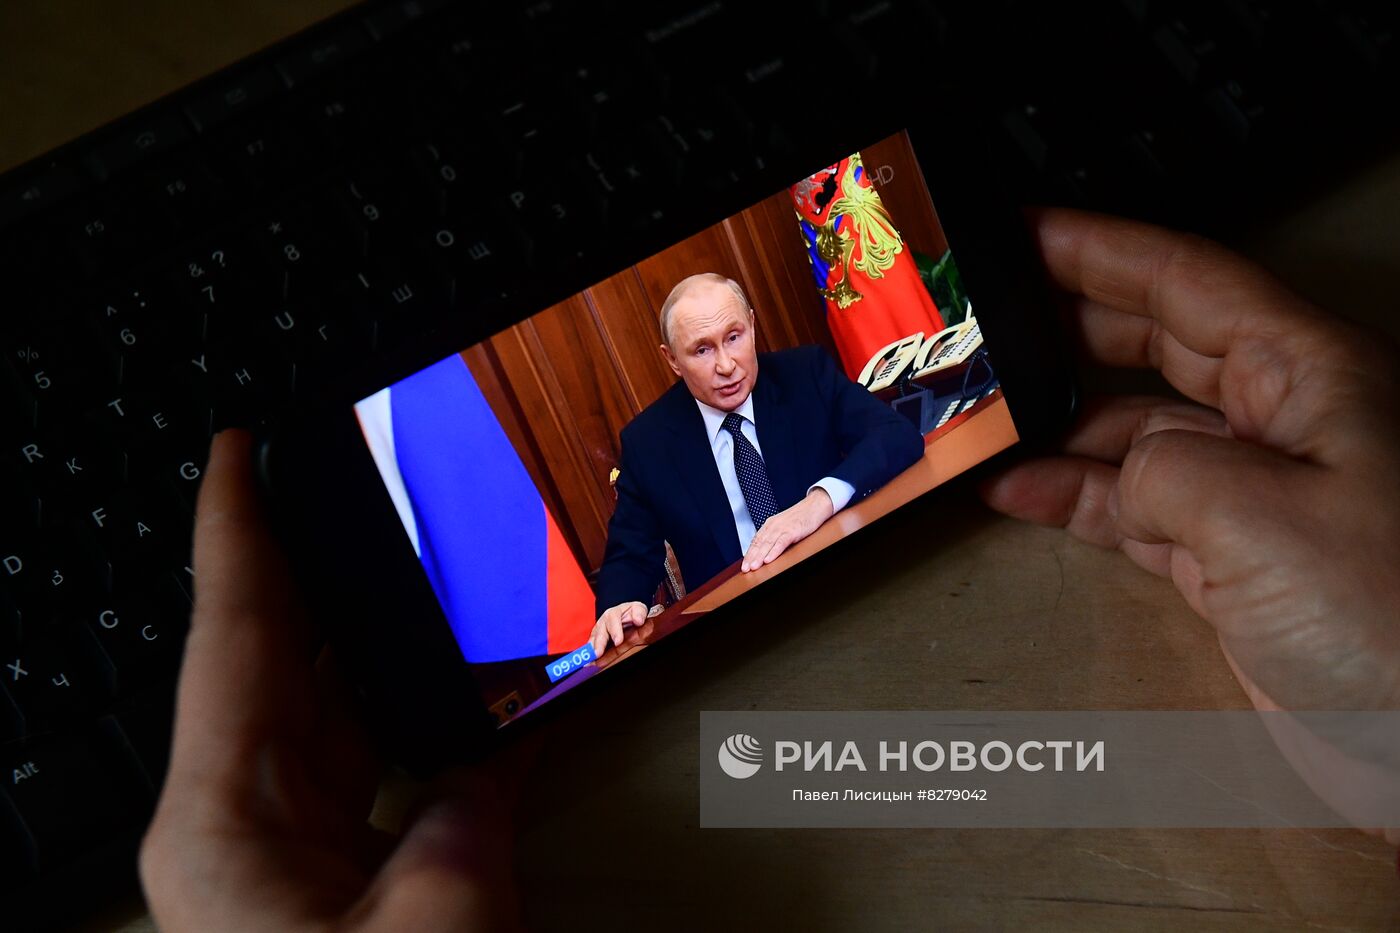 Трансляция срочного обращения В. Путина к россиянам